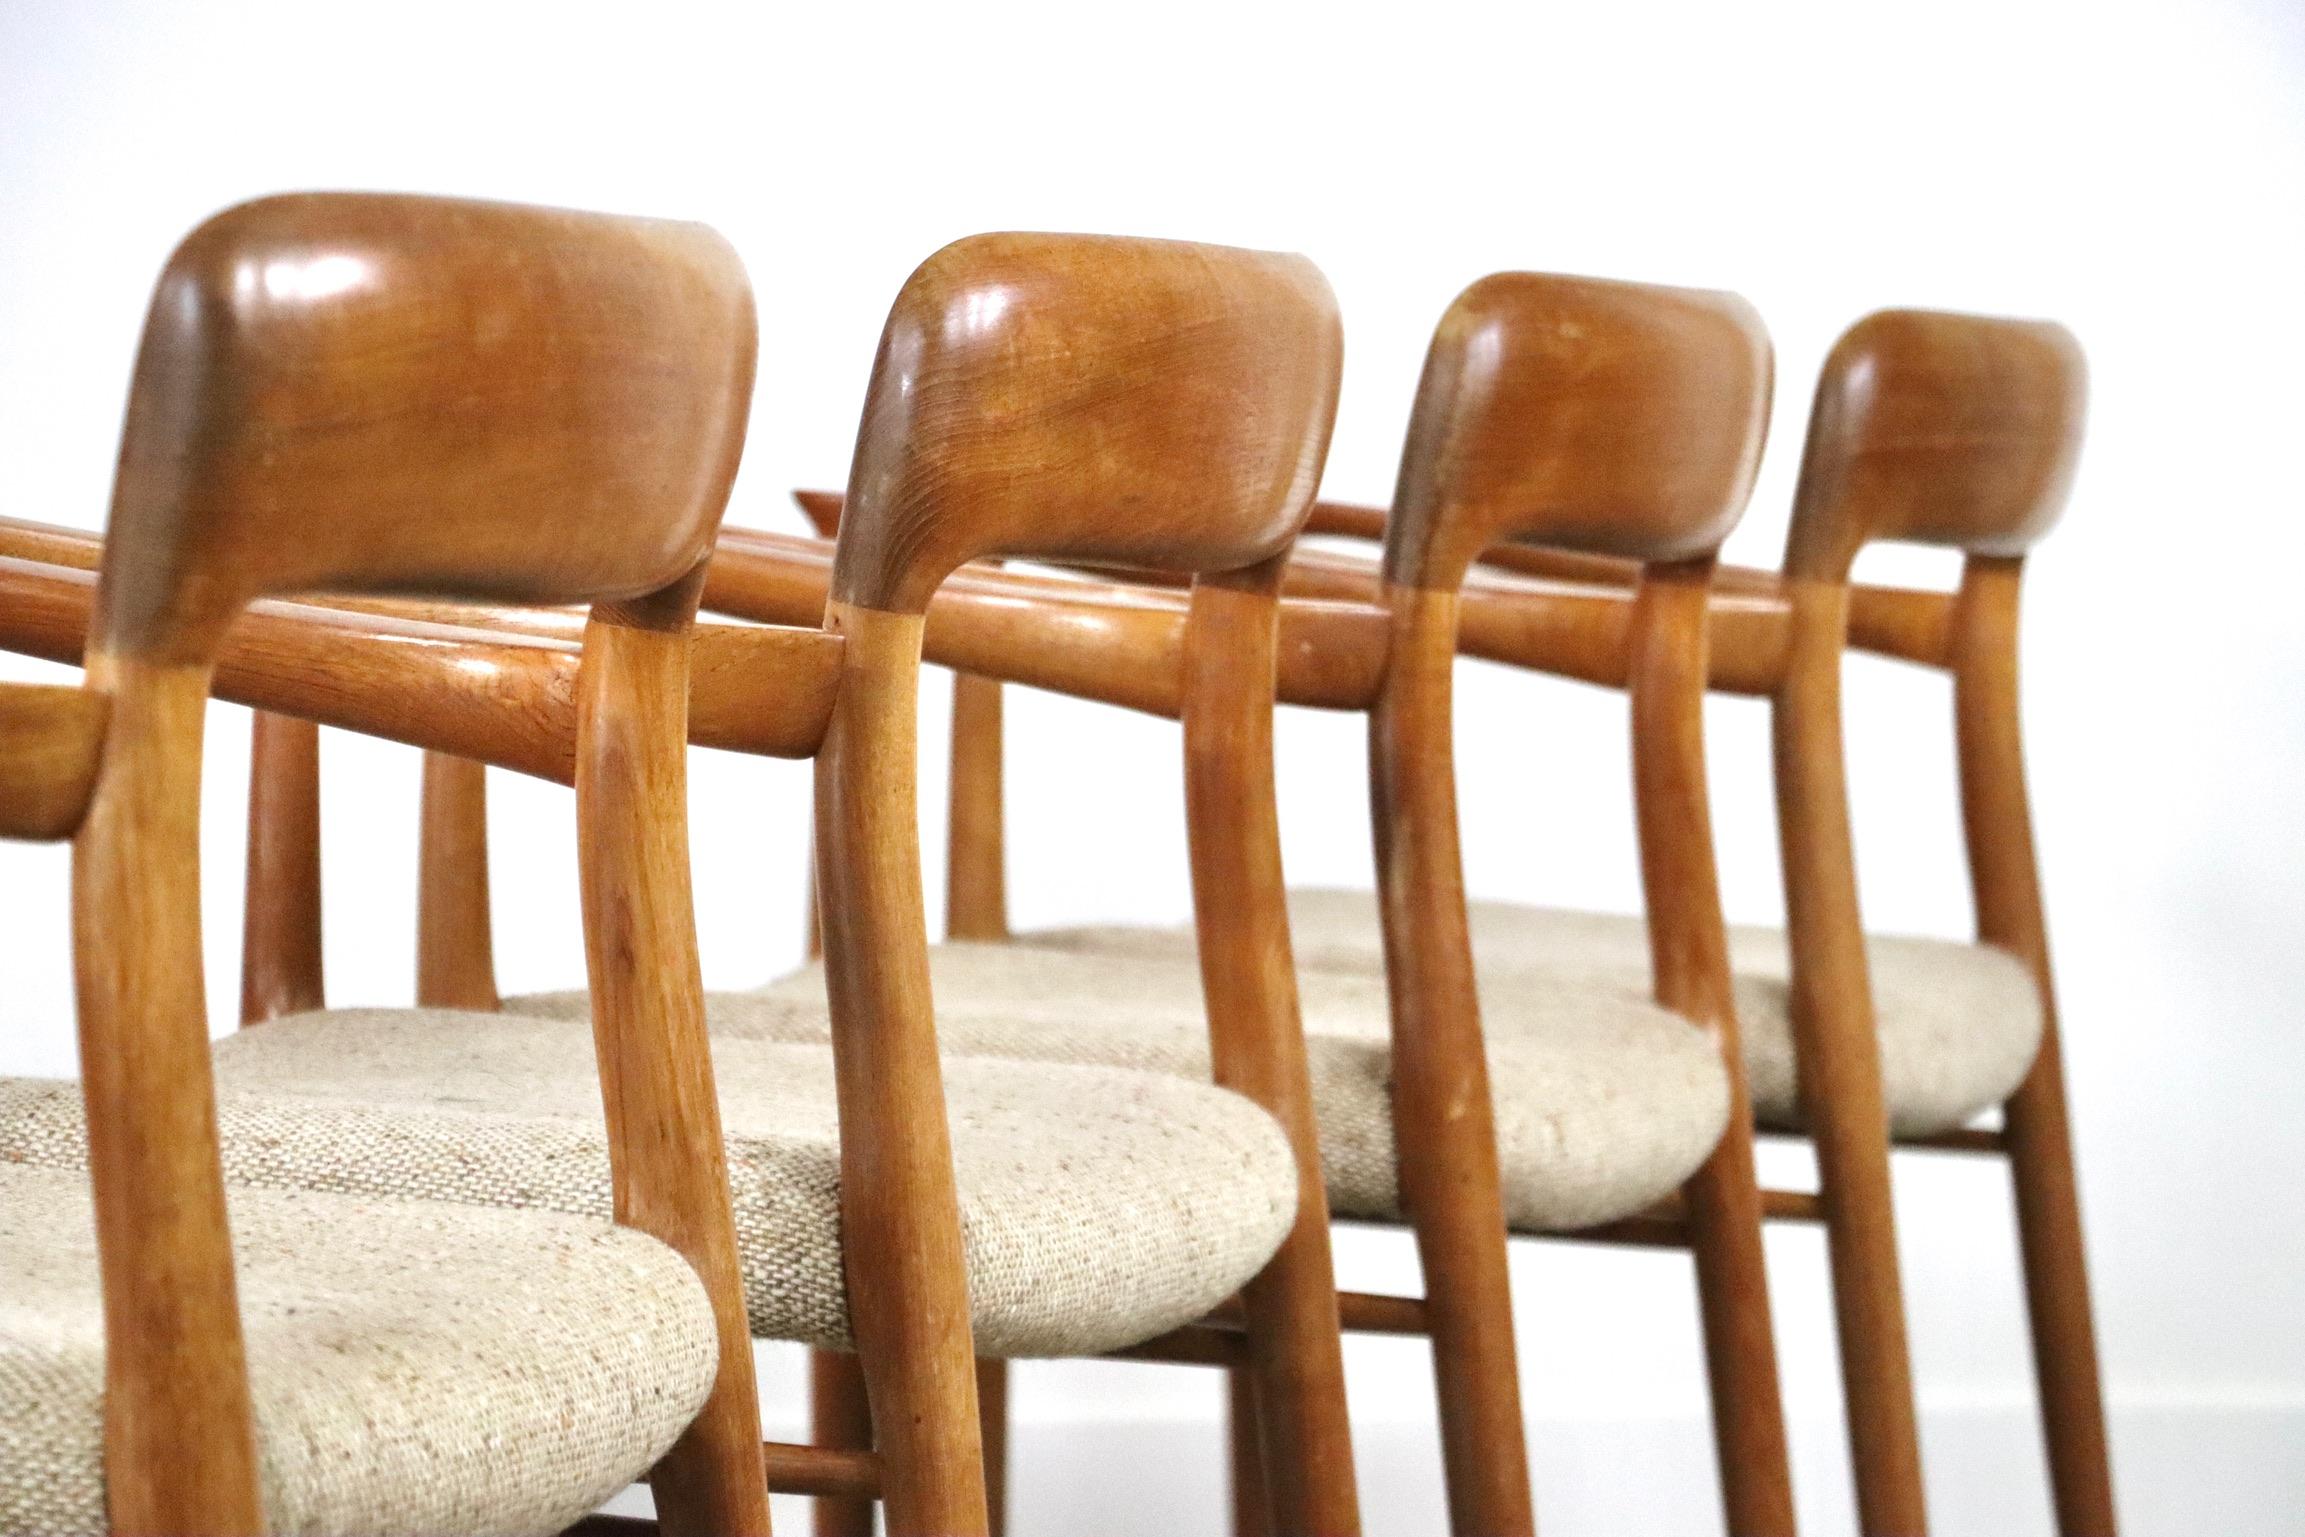 Incroyable ensemble de 4 chaises de salle à manger Model 56 en chêne avec accoudoirs sculptés, conçu dans les années 1950 par Niels Otto Møller pour J.L.. Møller. Magnifique cadre en chêne qui complète le rembourrage en laine beige/crème des sièges.